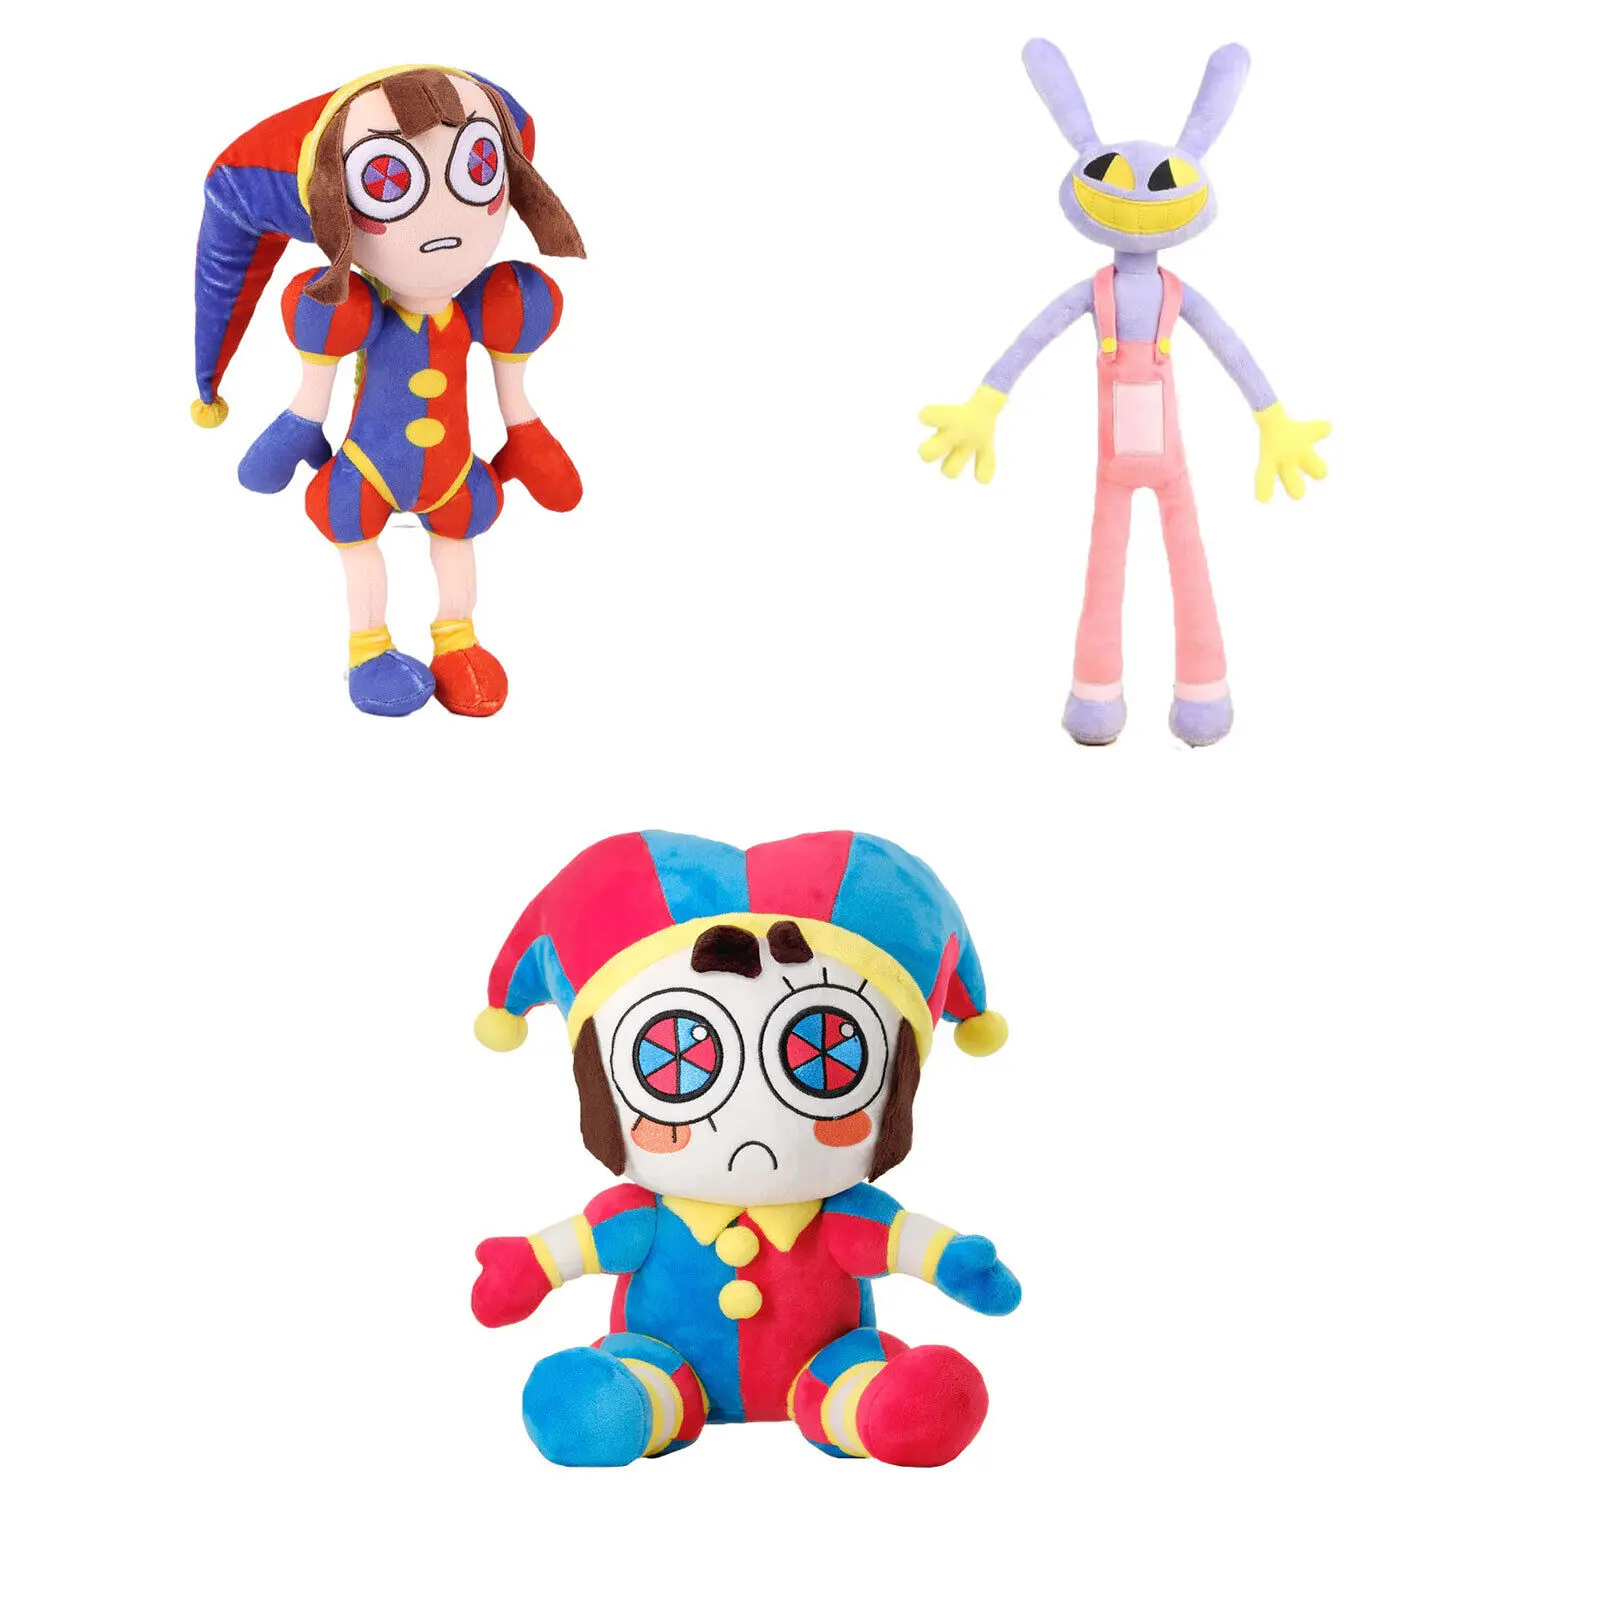 Benutzer definiertes neues Design DAS ERSTAUNLICHE DIGITAL CIRCUS Animiertes Clown-Plüsch tier Kuscheltier Spielzeug Puppe Jax Digital Circus Plüsch tier